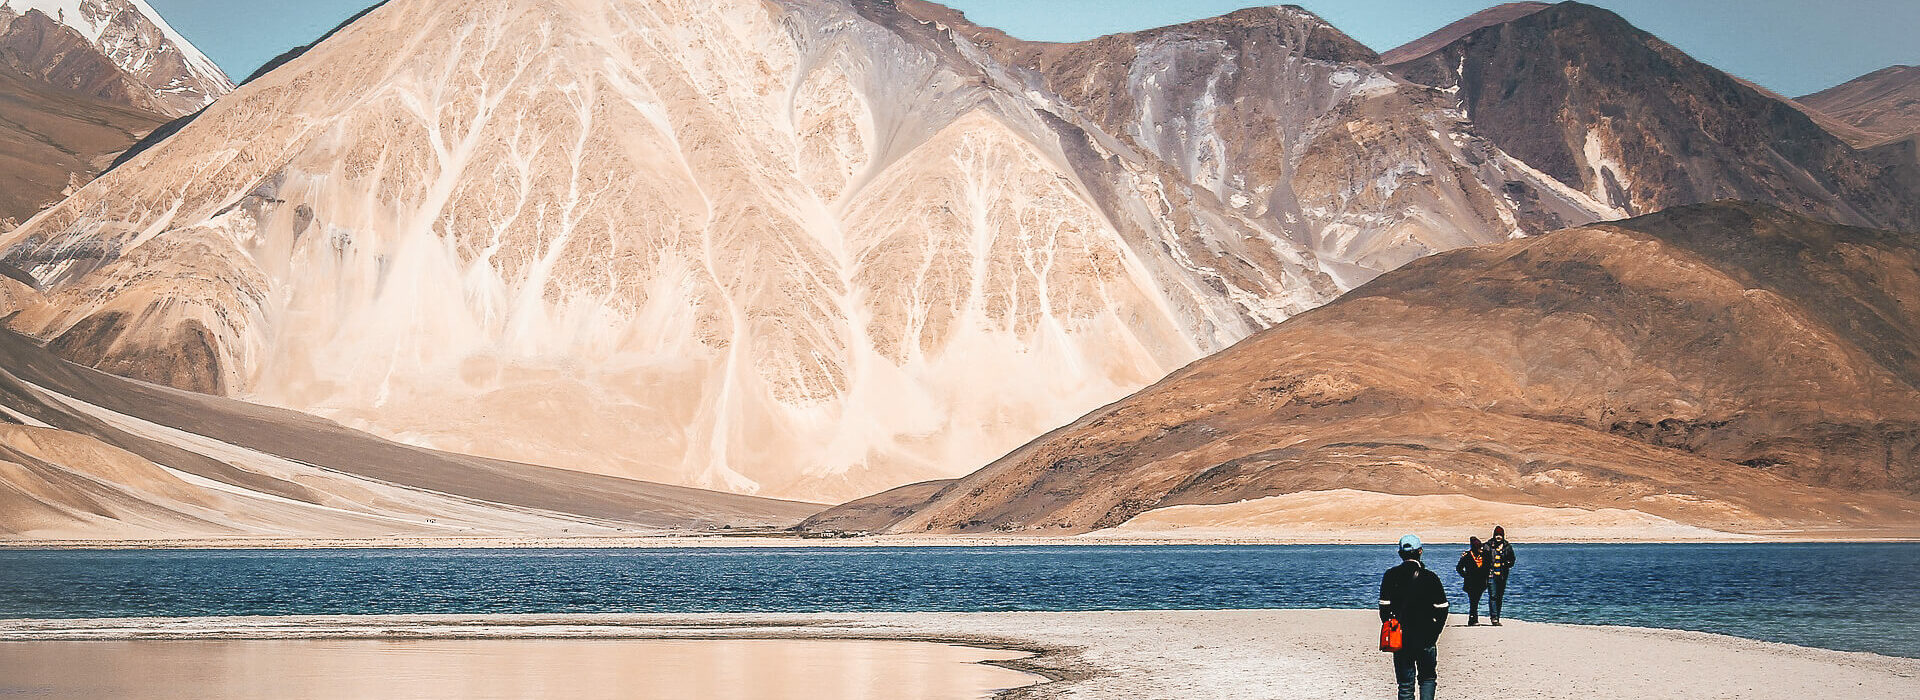 Ladakh Tri Adventure Earth's Edge 4